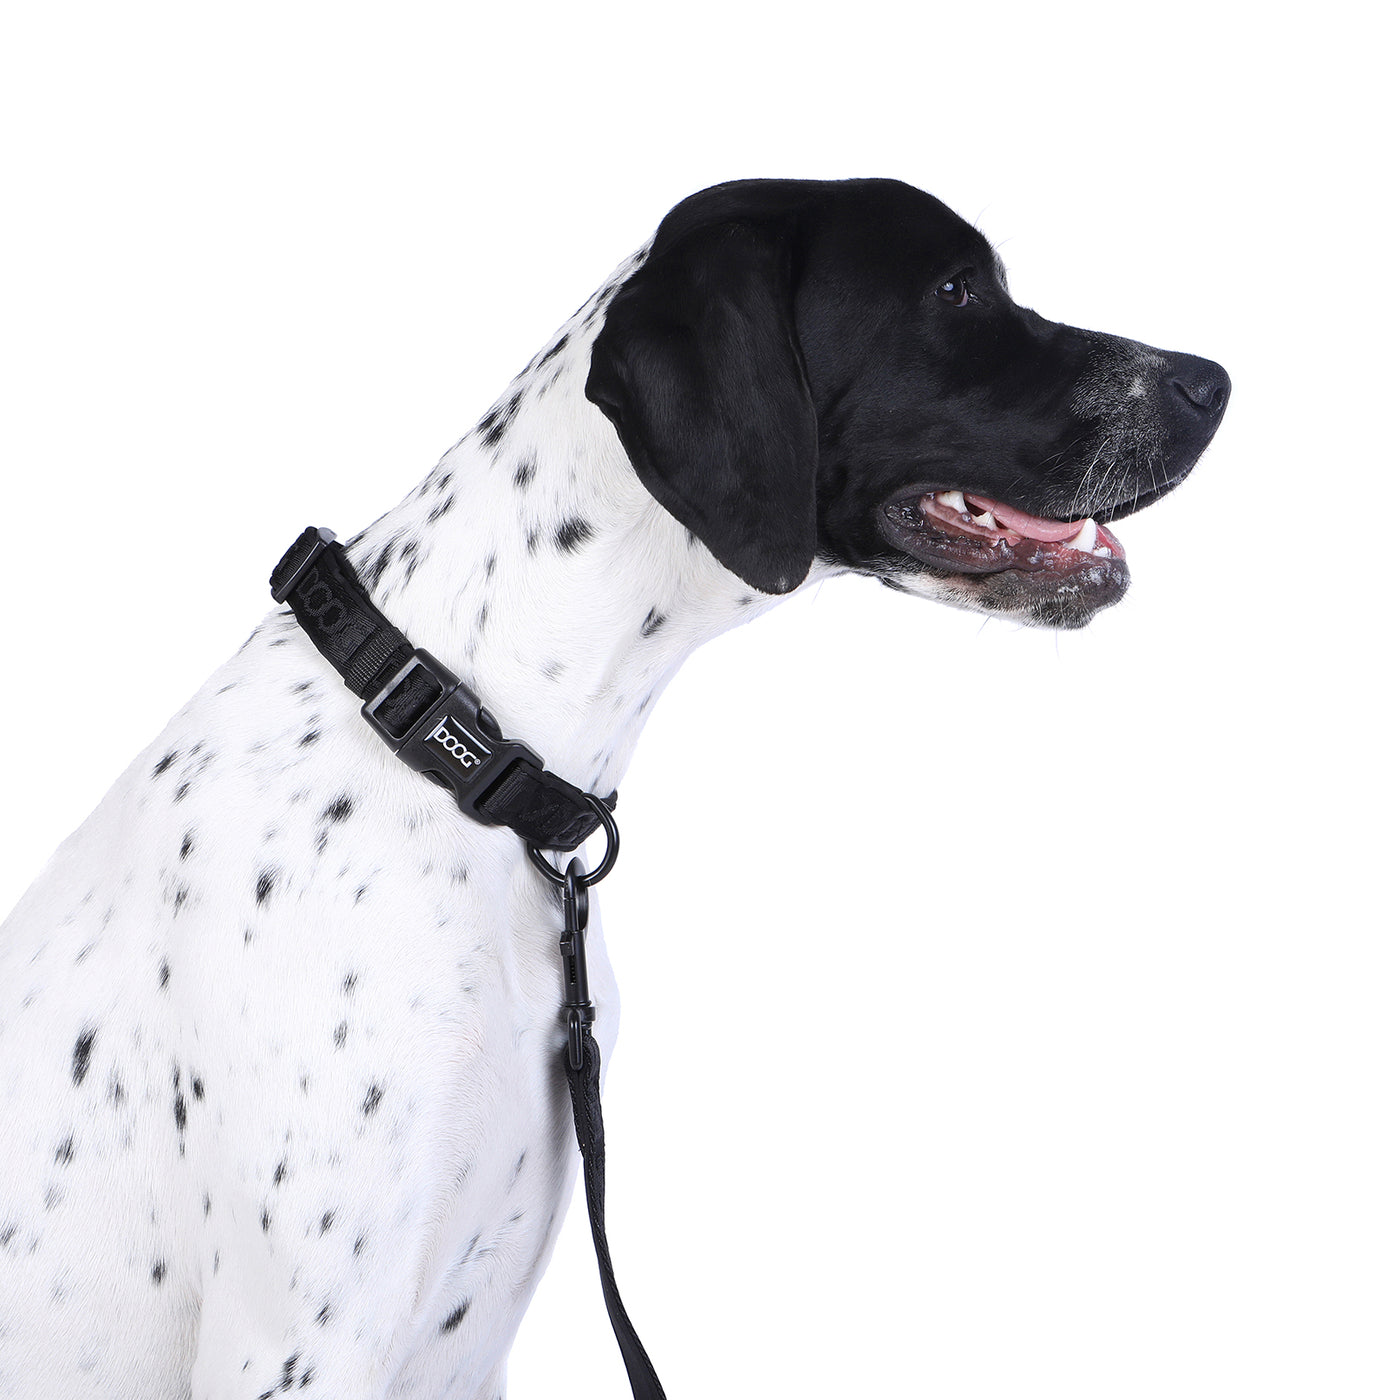 Neosport Neoprene Dog Collar - Black